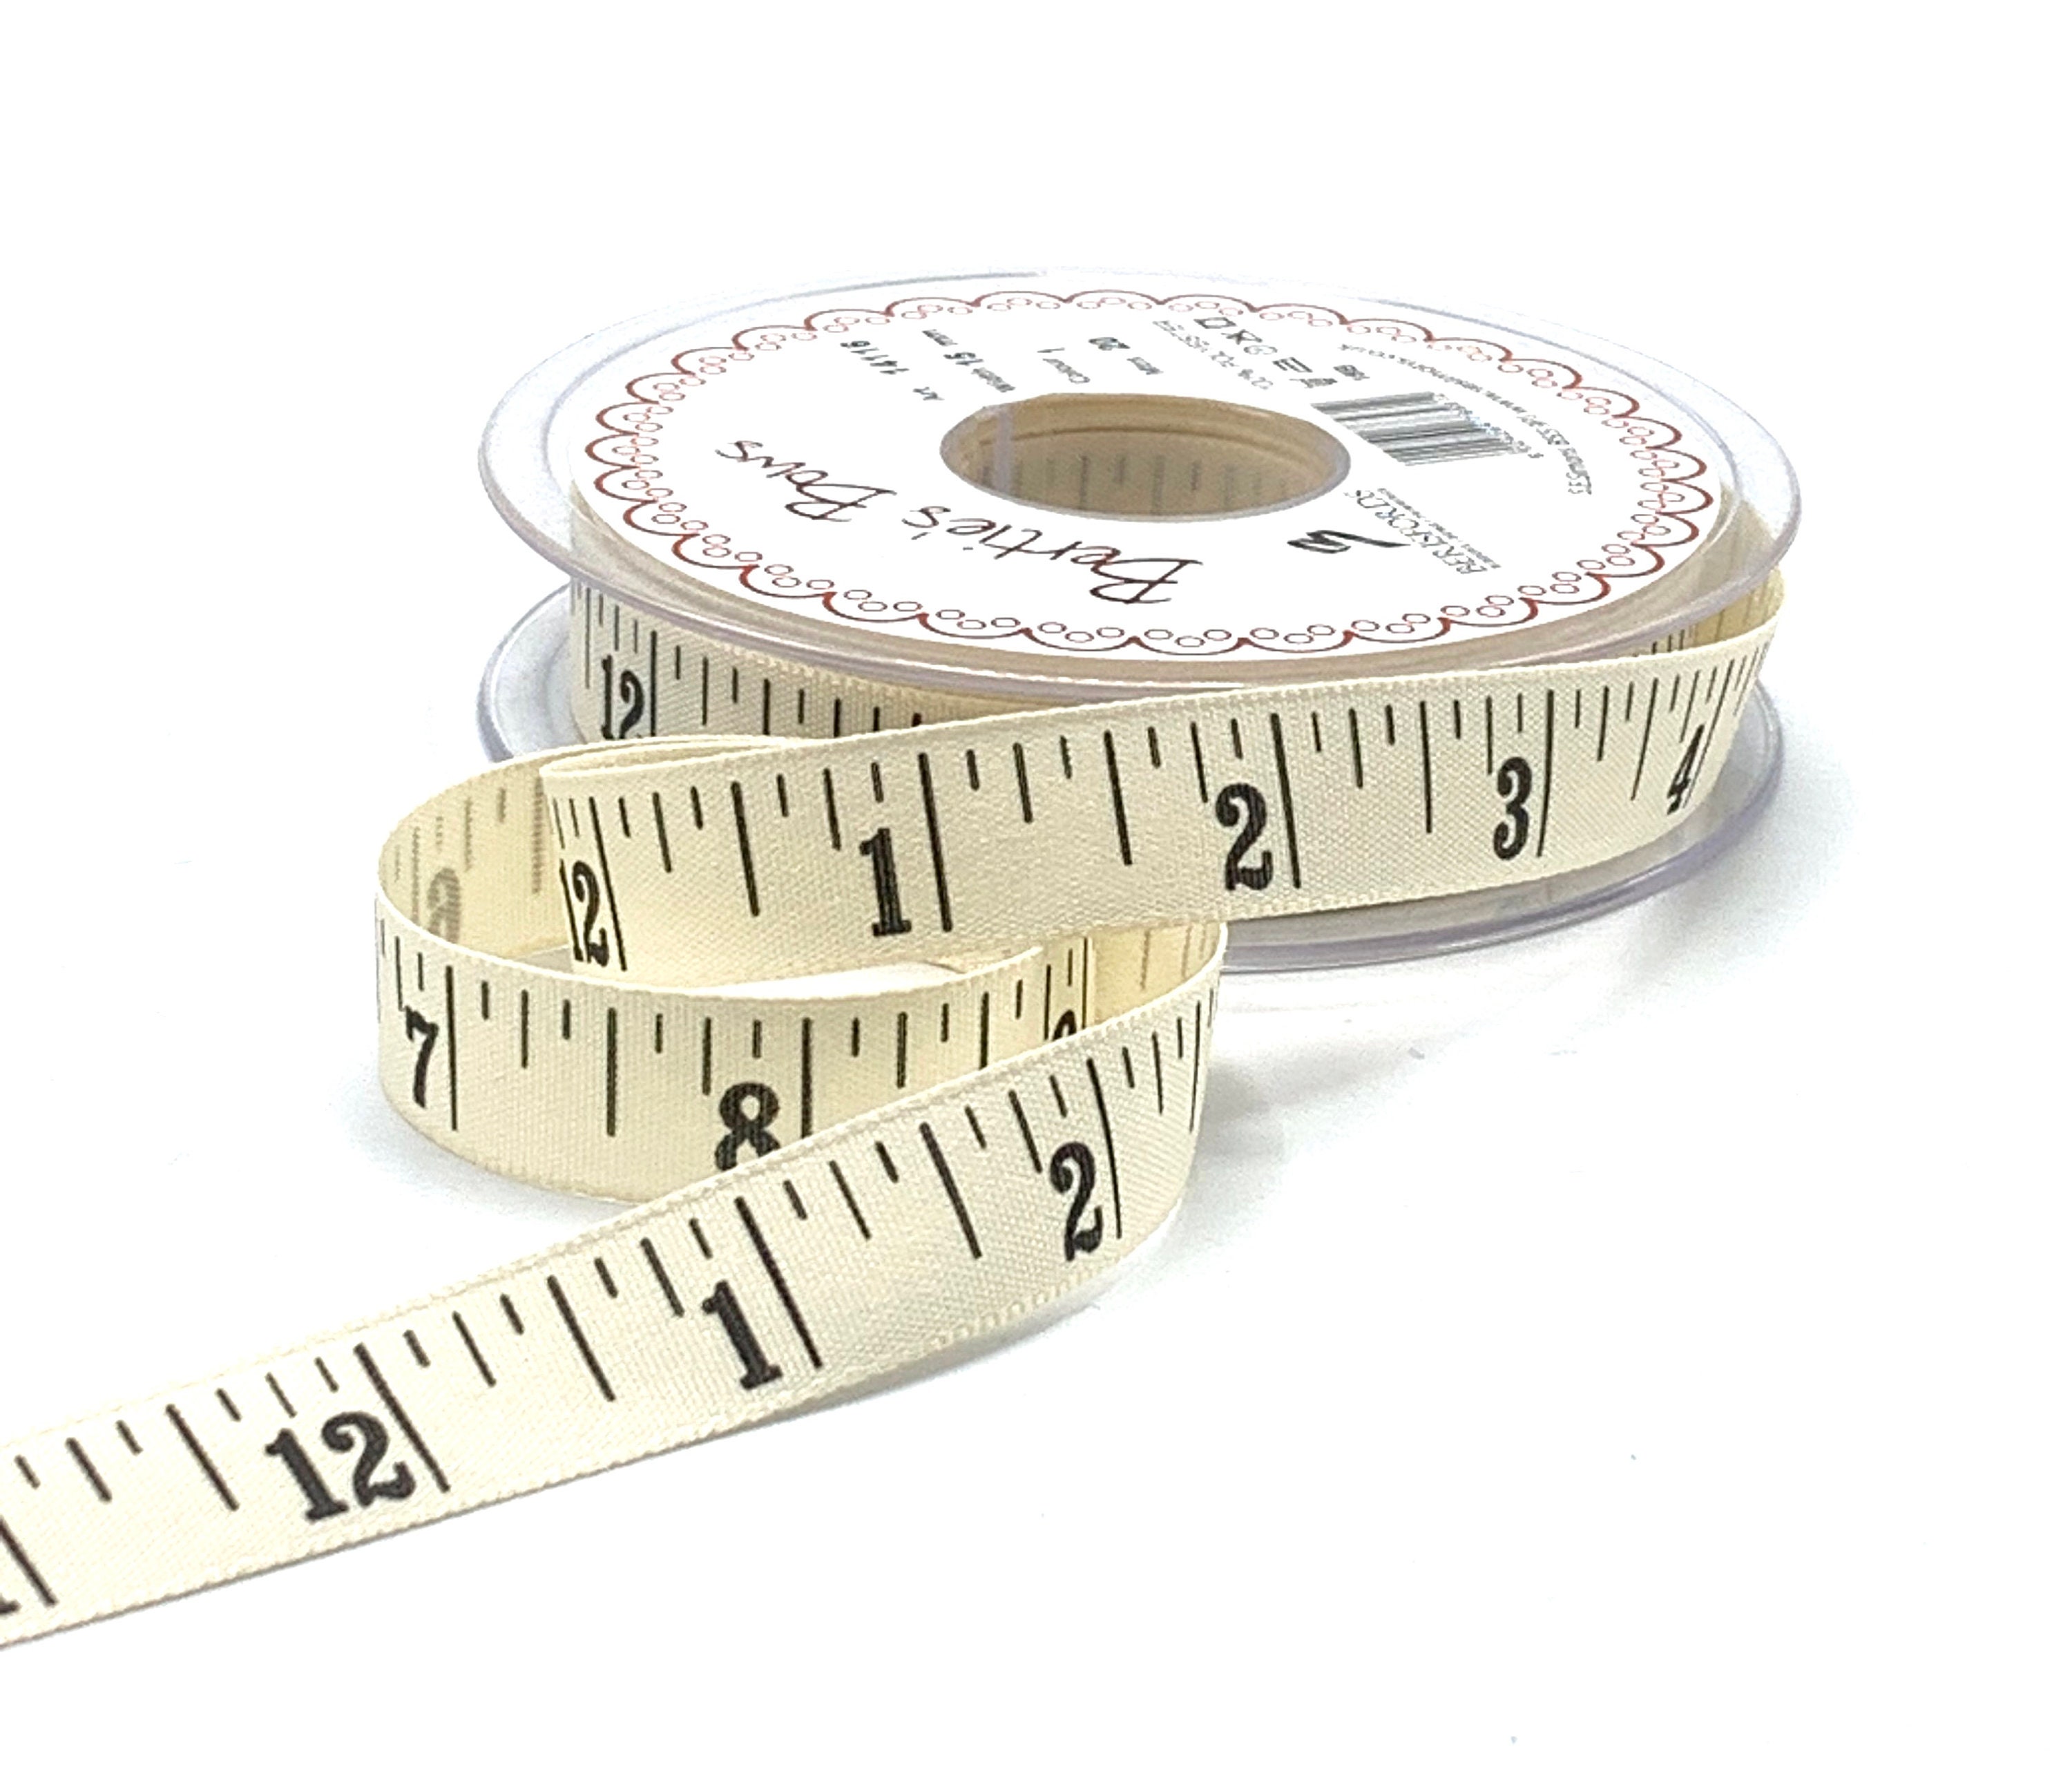 Chameleon-tape Measure Ruler Tailor Clothing Small Tape for Friend Family Neighbors Gift, Size: 7